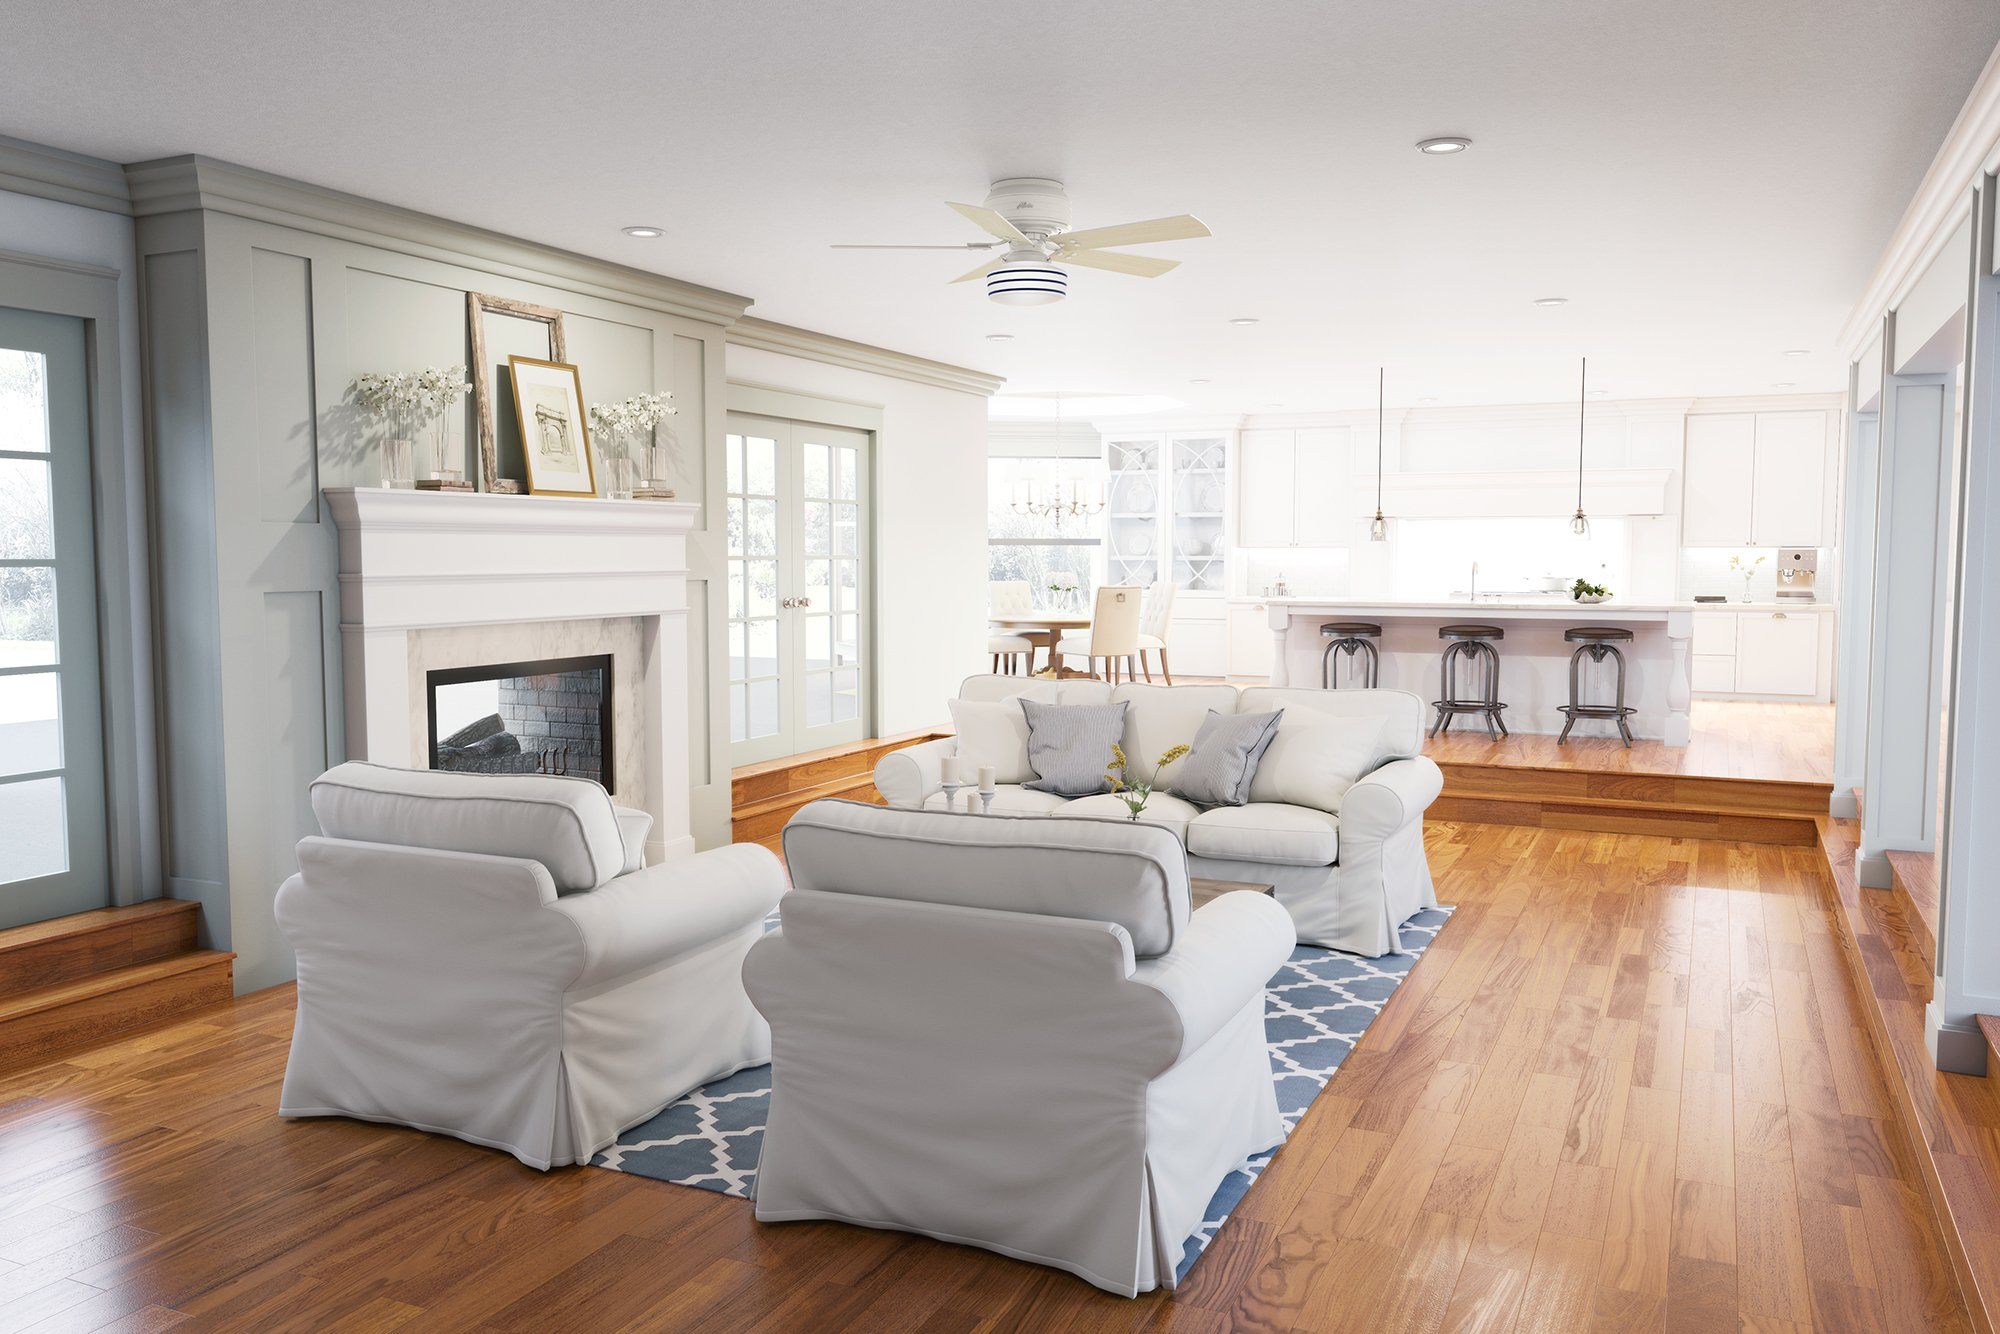 Living room ceiling fan ideas for every style – Hunter Fan